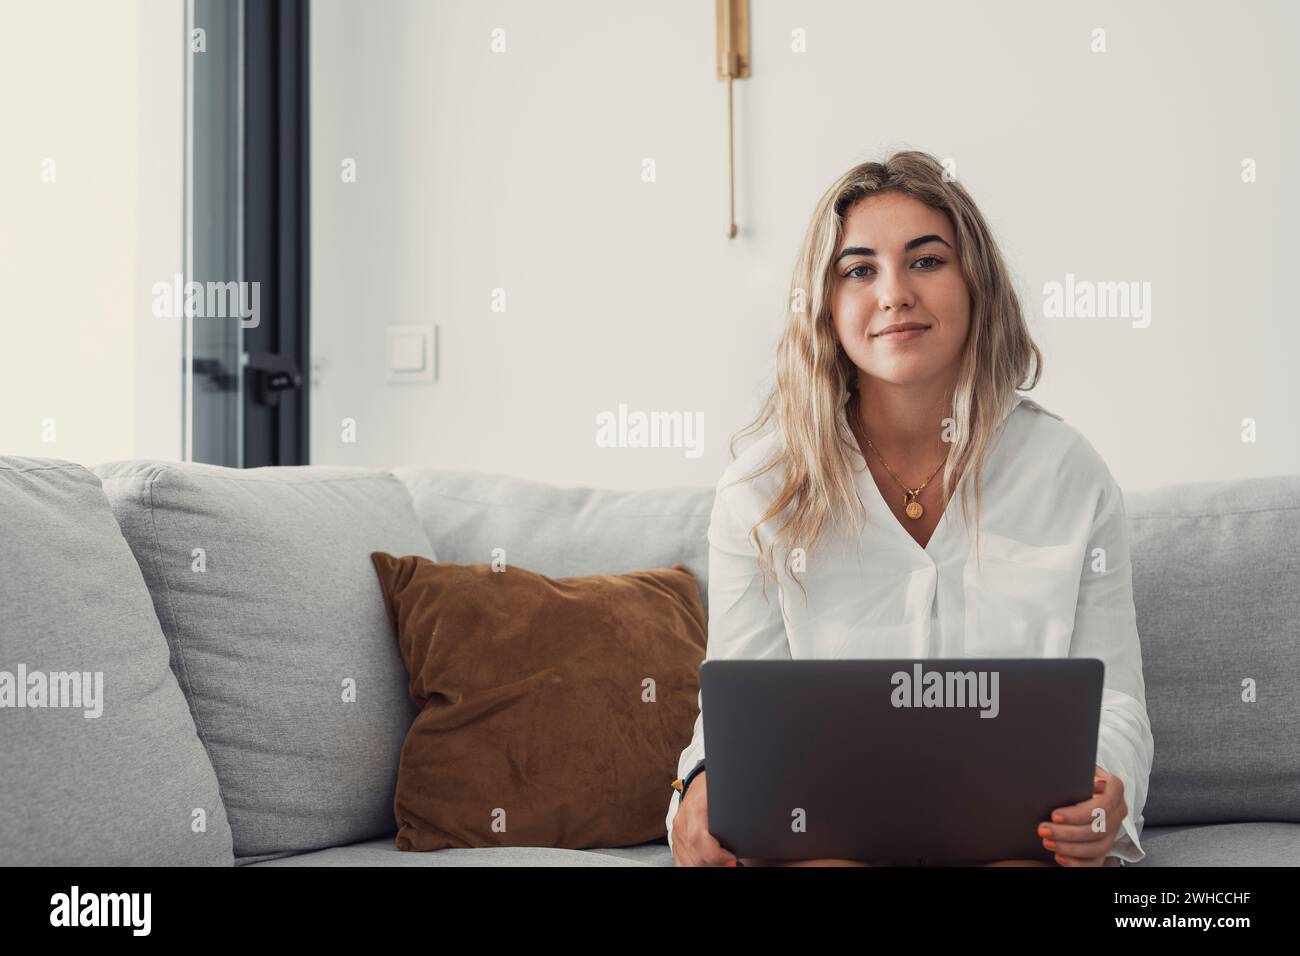 Porträt einer jungen attraktiven blonden Frau, die einen Laptop-pc auf der Couch benutzt und zu Hause im Internet surft. Arbeiten online lächelnd in die Kamera schauen Stockfoto